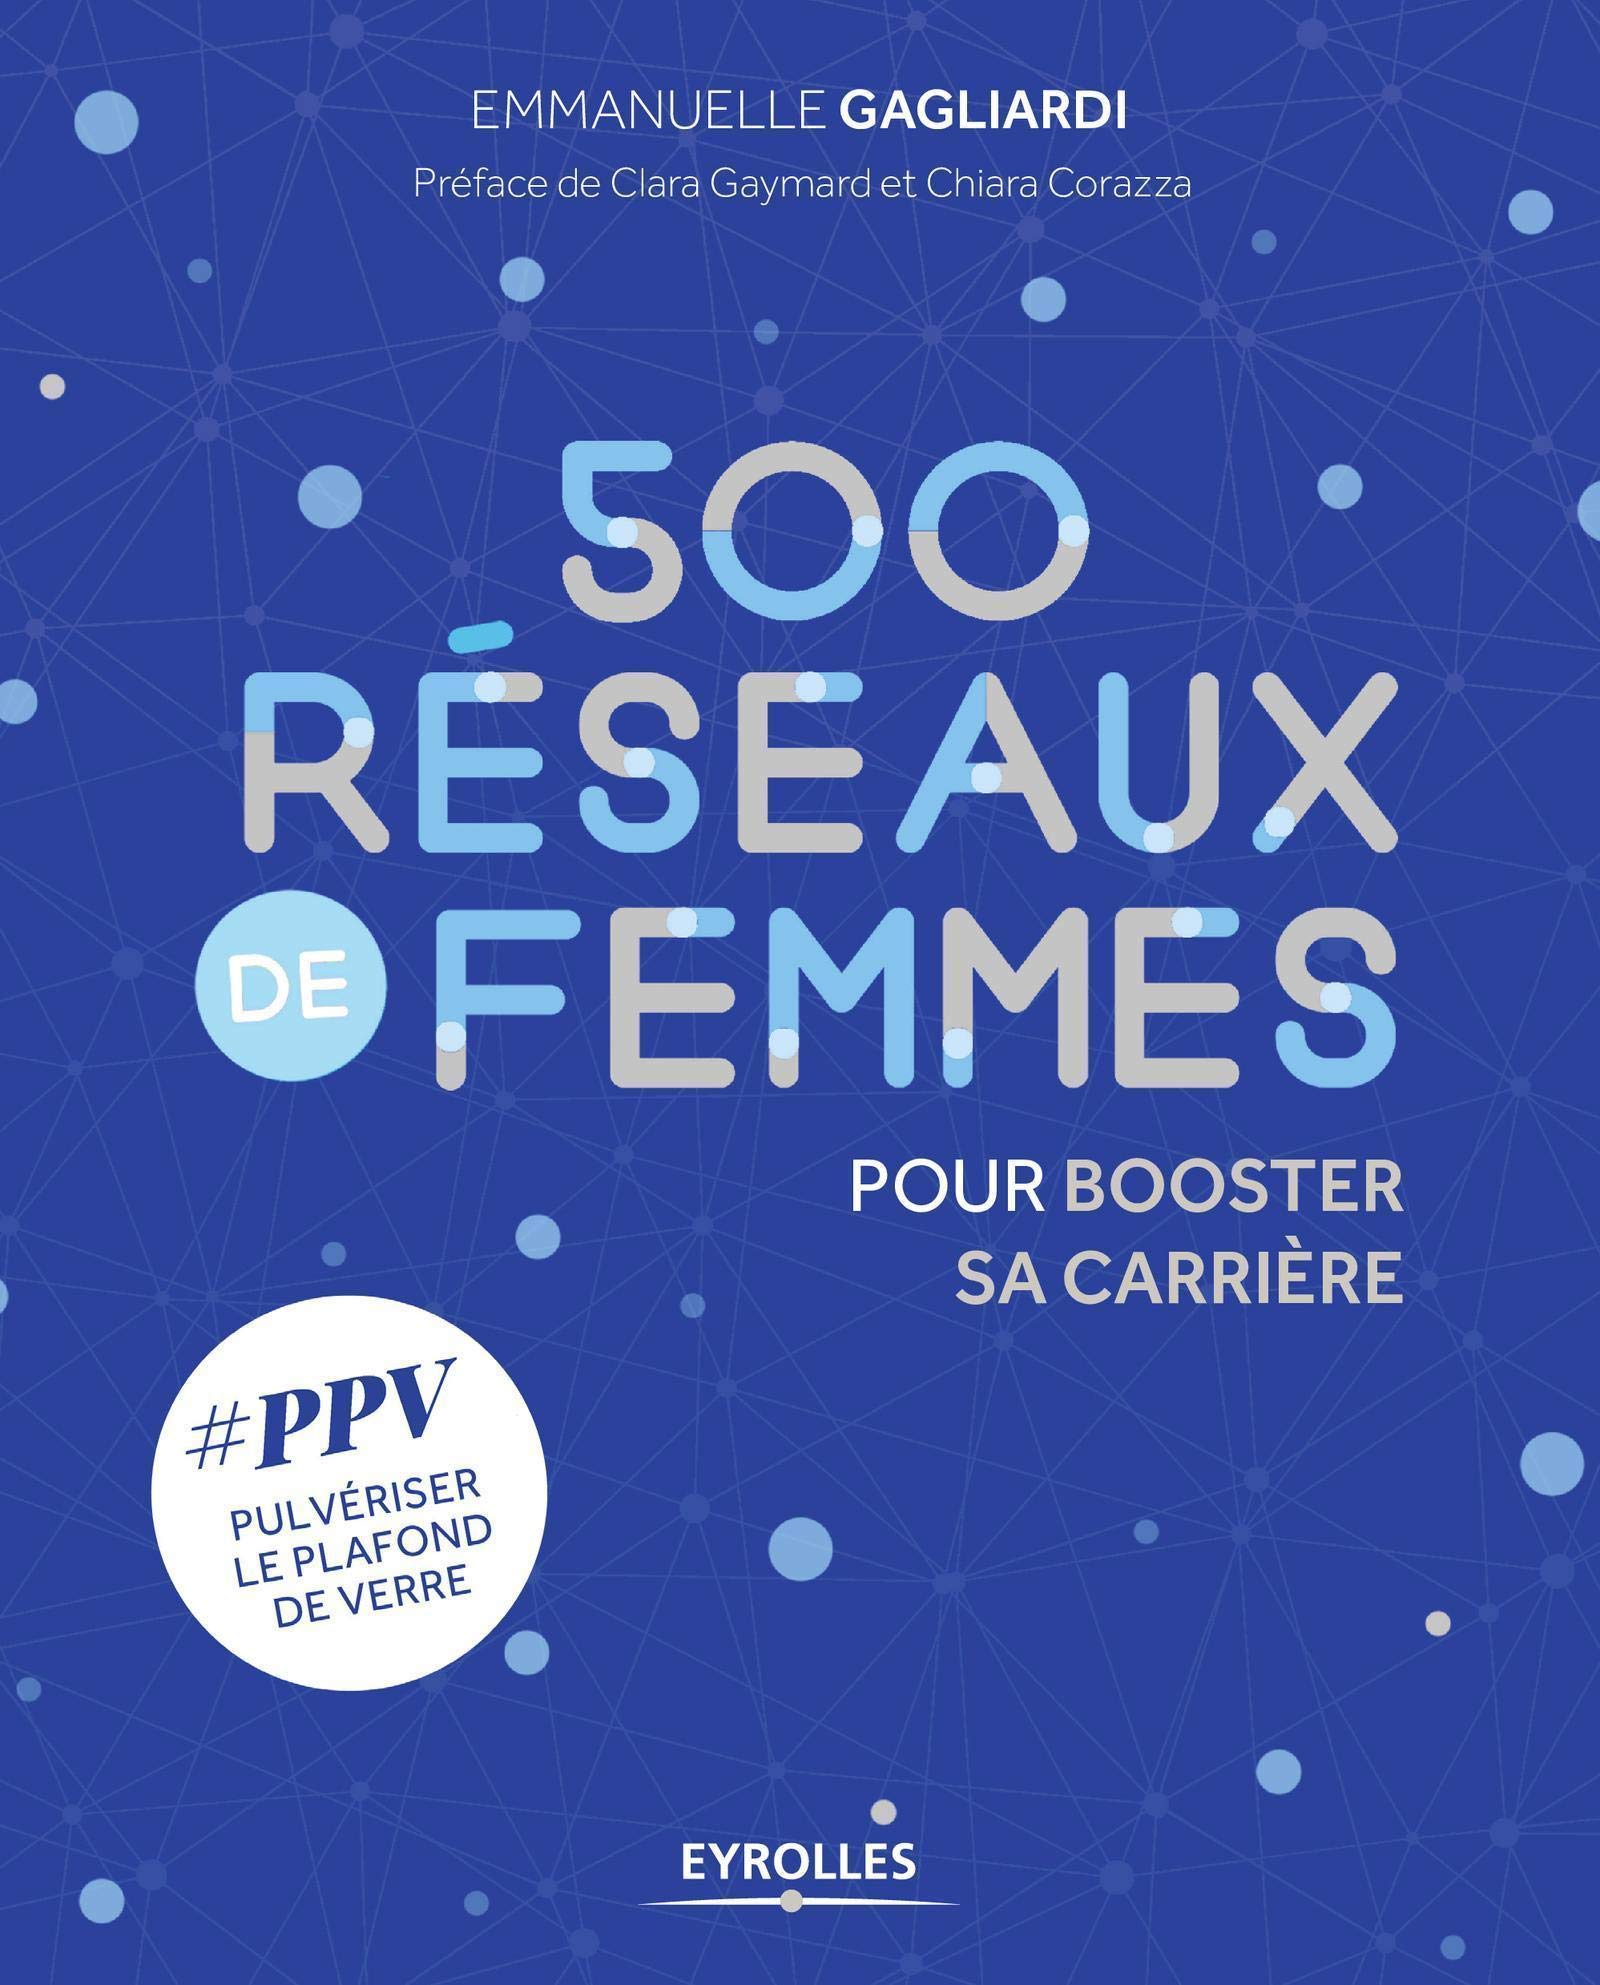 500 Réseaux de femmes pour booster sa carrière: #PPV pulvériser le plafond de verre